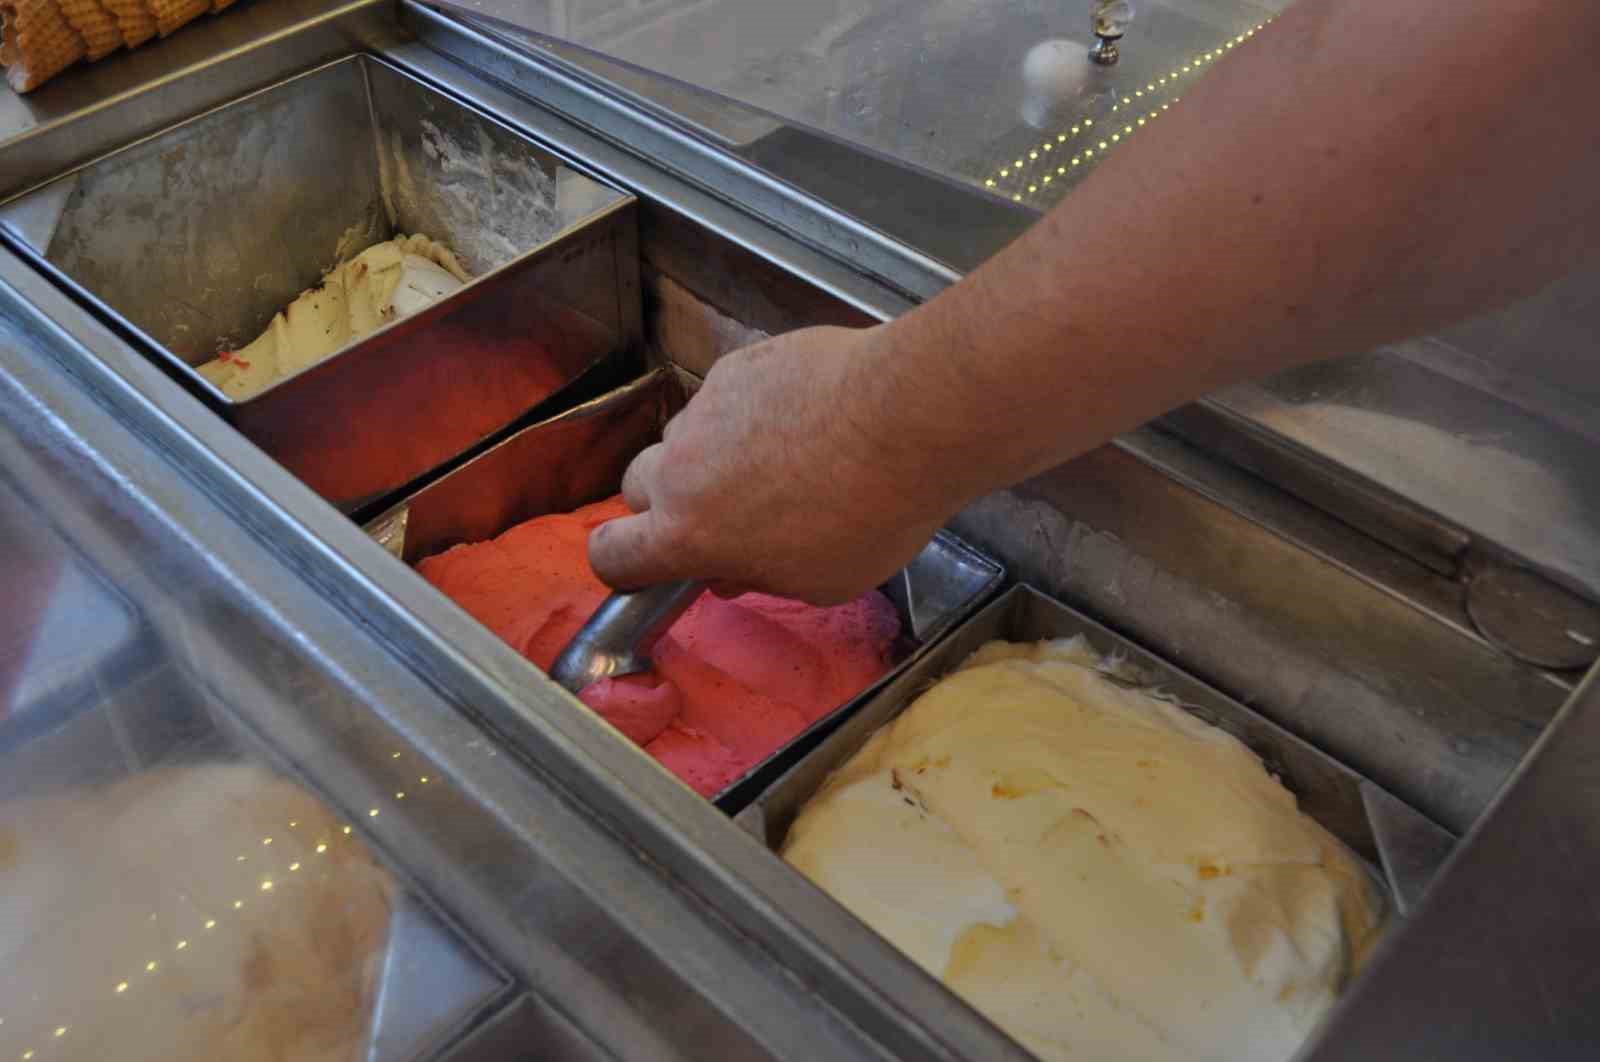 Öğlen sıcakları dondurmacıların işini gece saatlerine kaydırdı